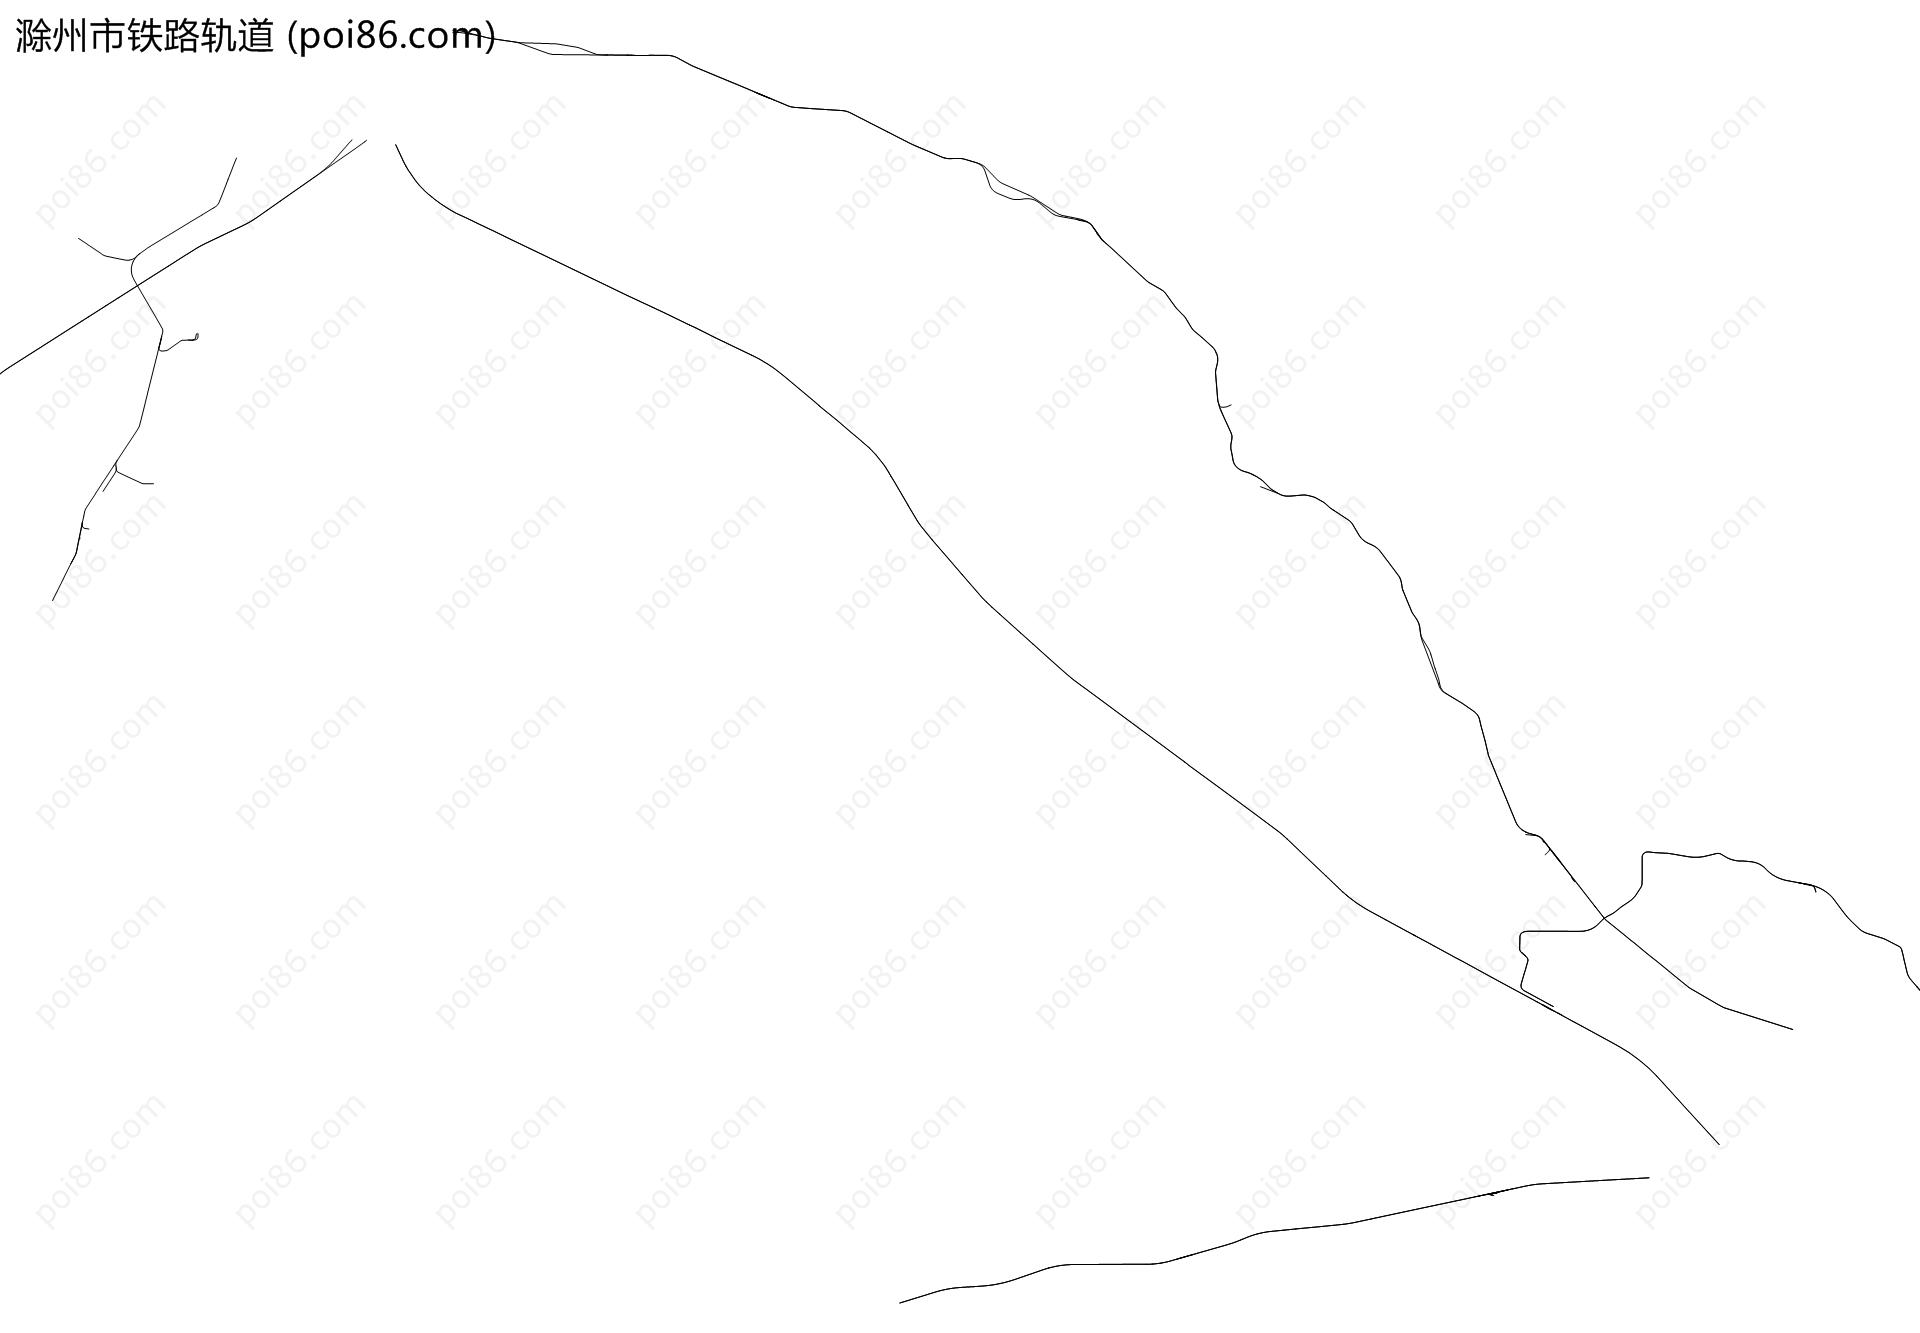 滁州市铁路轨道地图